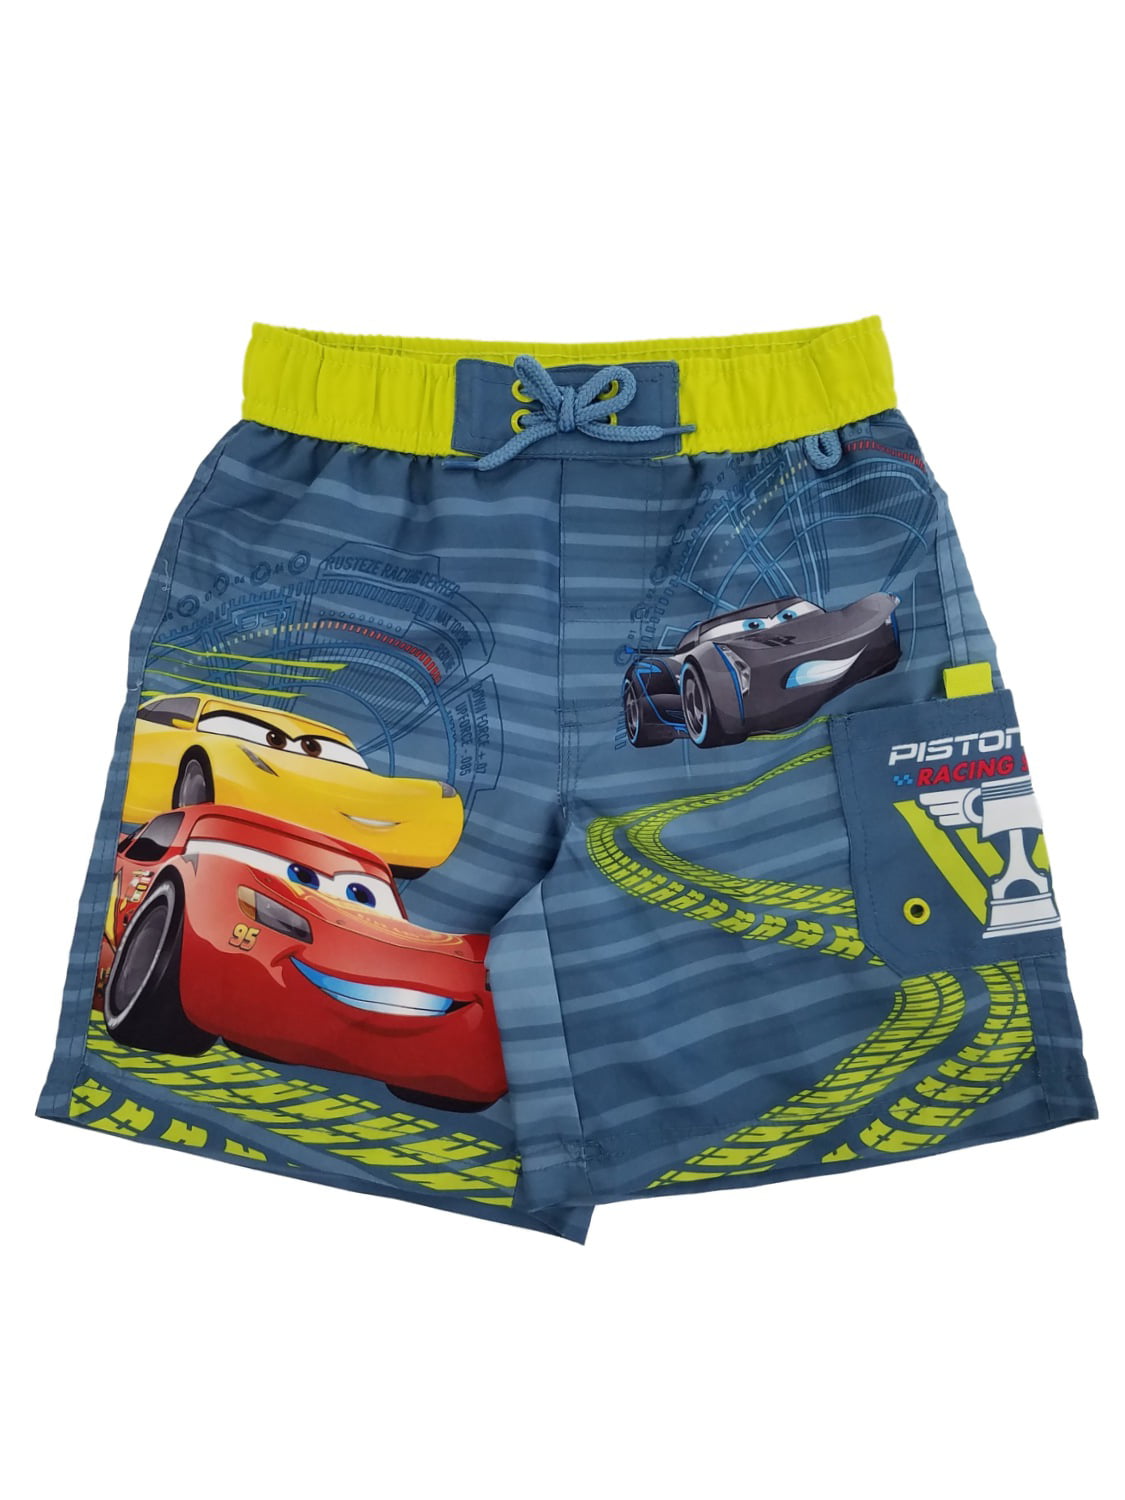 Pixar Cars Lightning Mcqueen Speedometer Men's Vest